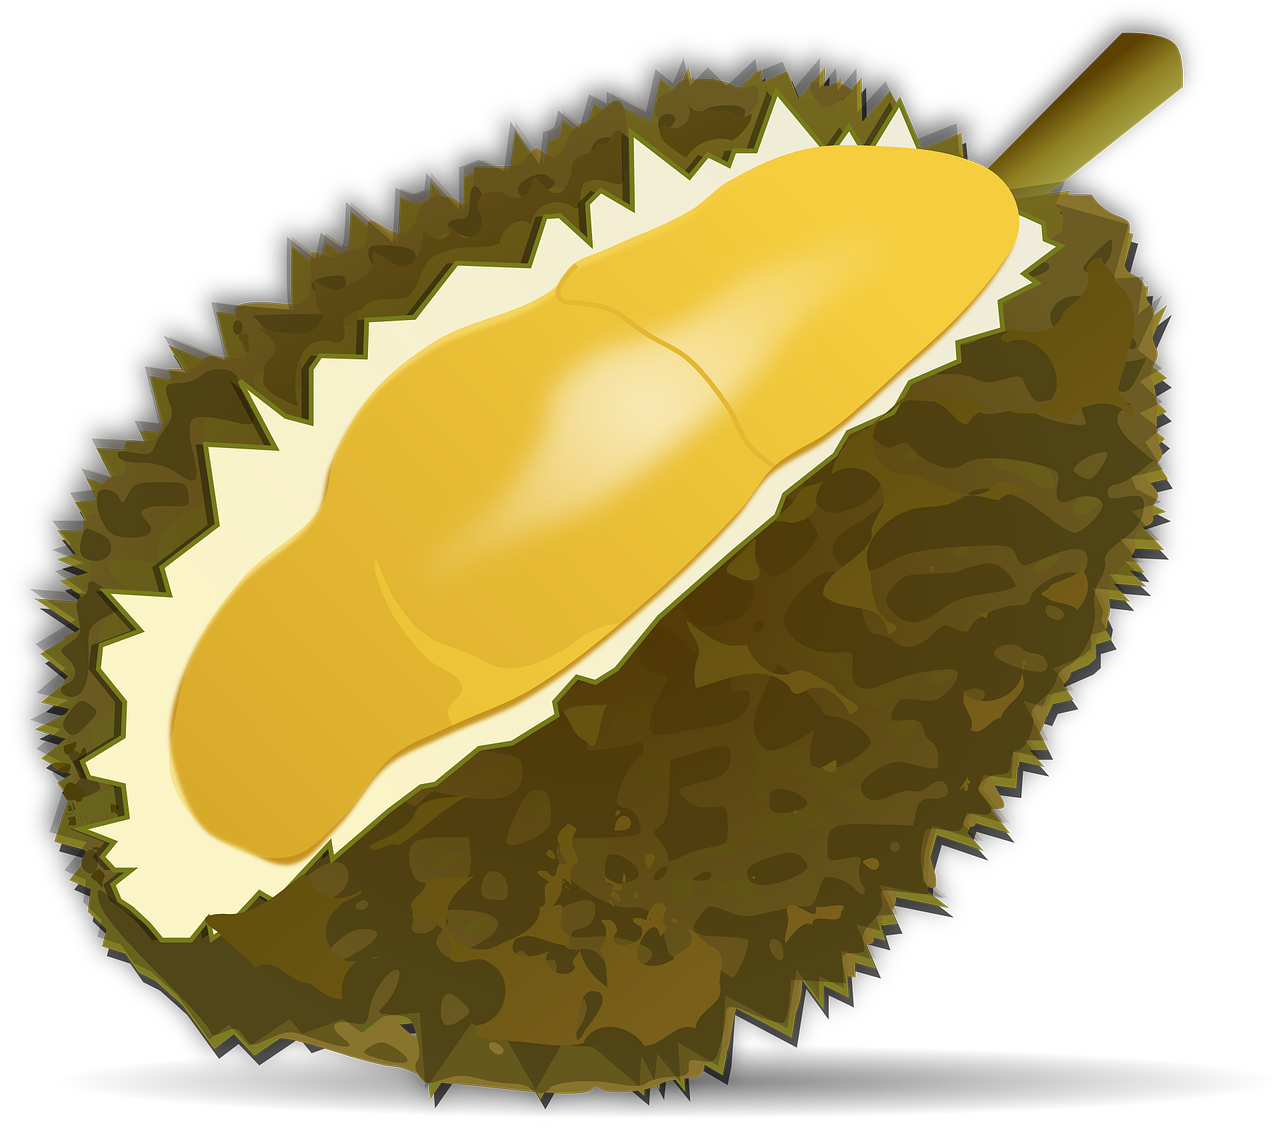 Durian Vaisiai, Vaisiai, Maistas, Durio, Malvaceae, Tailandas, Saldainiai, Žalias, Geltona, Supjaustyti